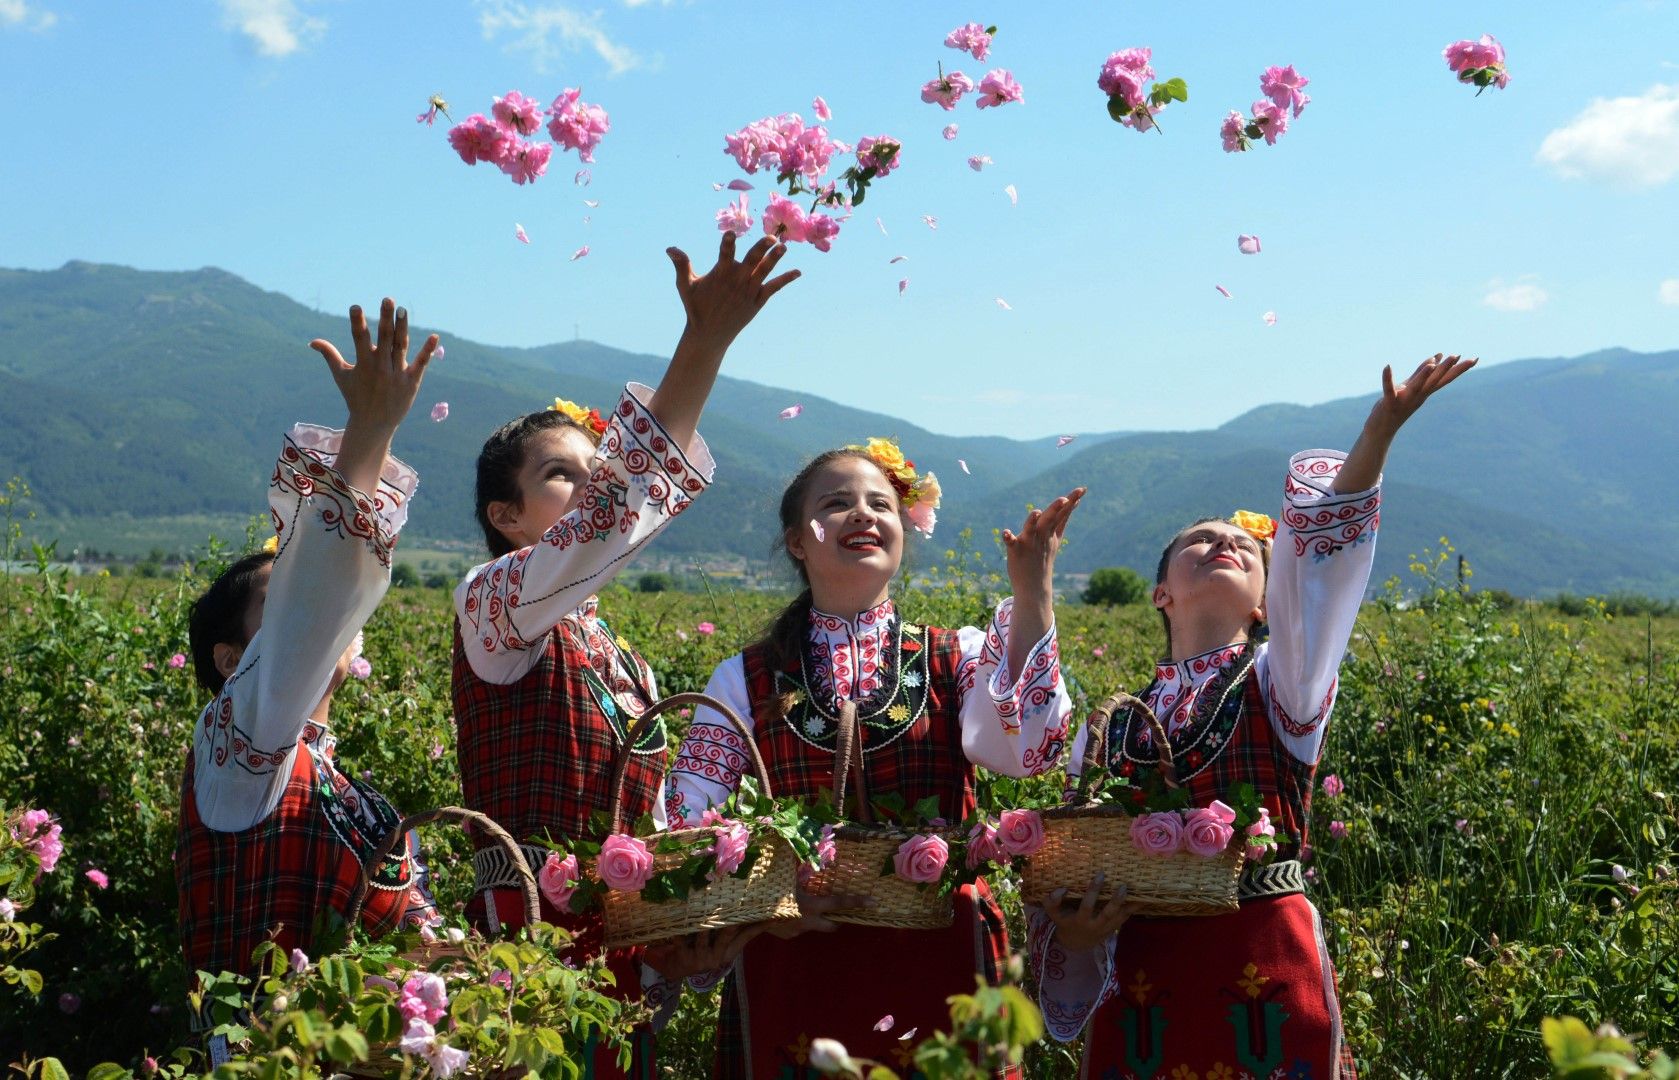 Казанлък (6 юни 2021) Автентичния ритуал розобер край Казанлък, събра гости и туристи от цял свят в розовите масиви край града. Събитието е част от 118-ия Празник на розата 